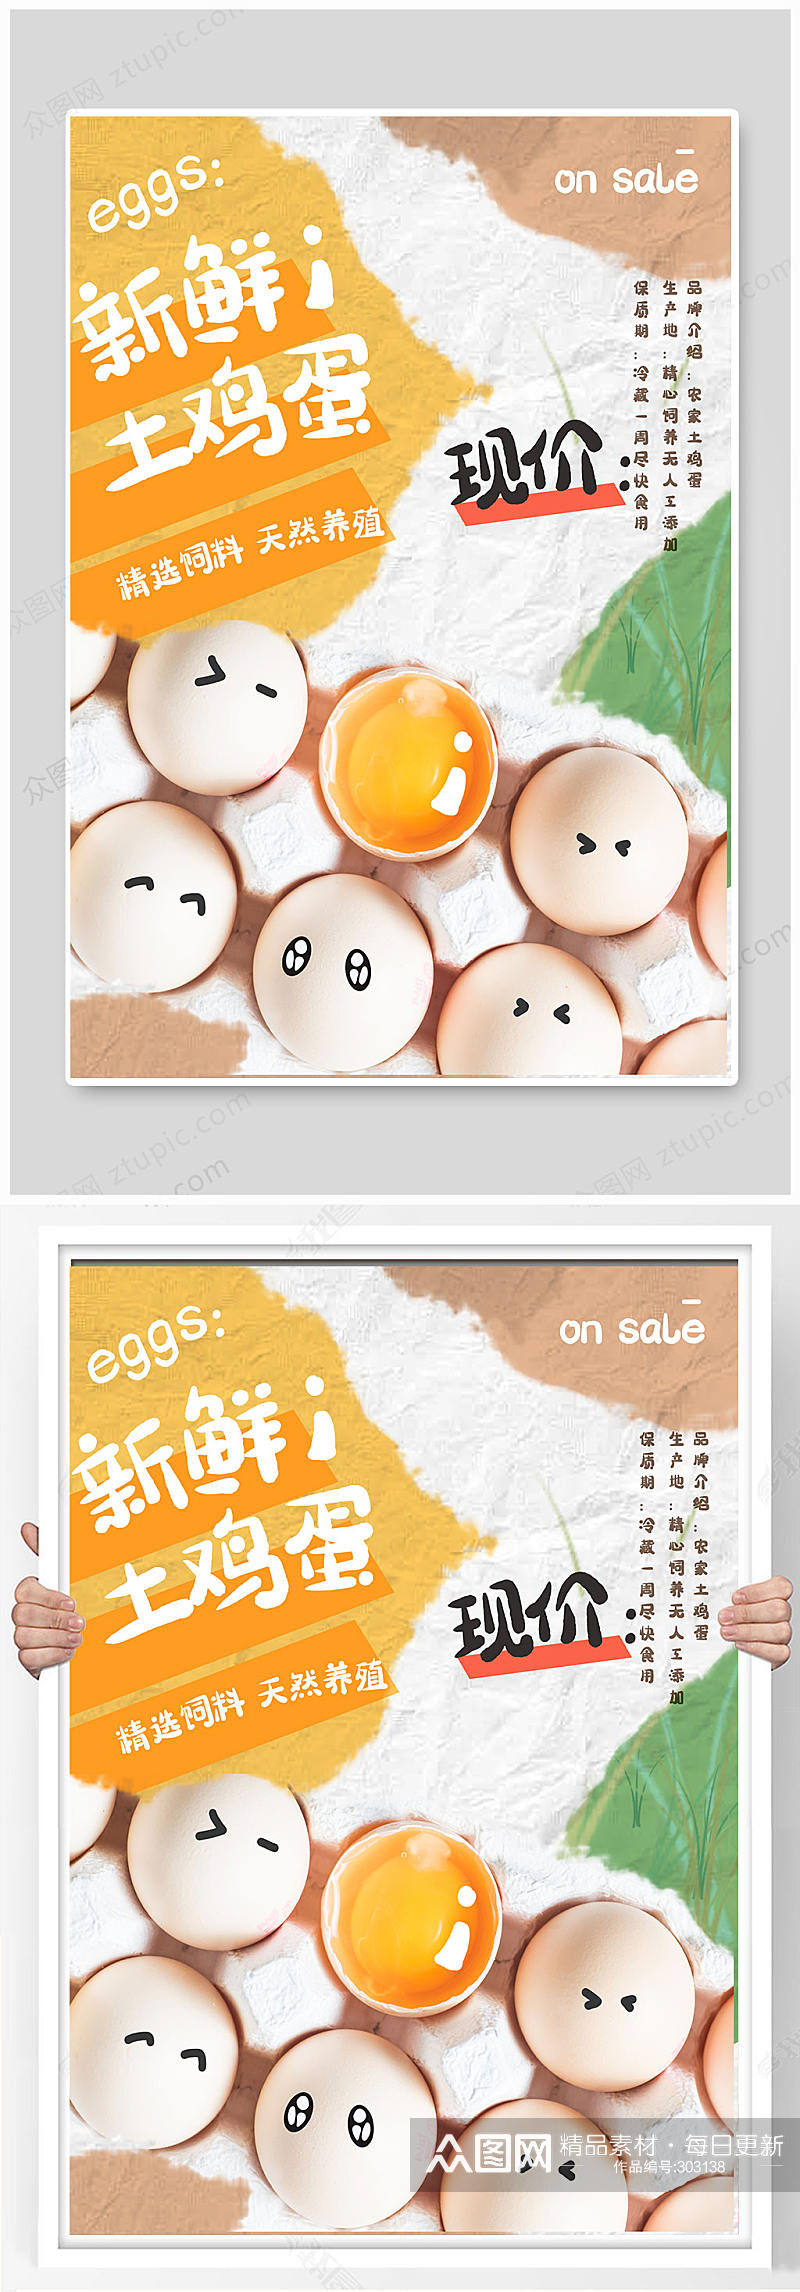 鸡蛋促销拼贴土鸡蛋海报素材